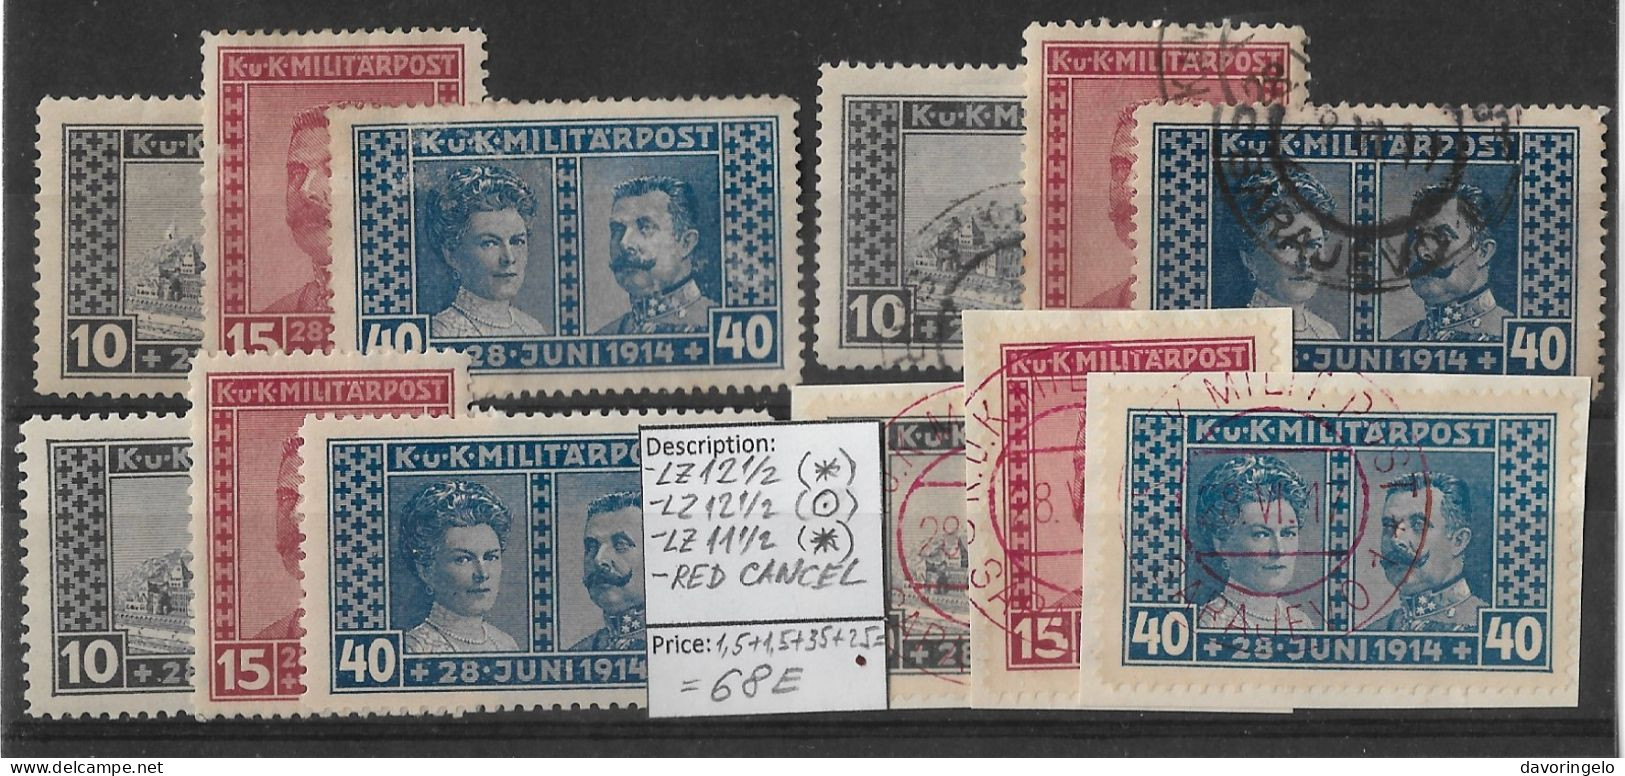 Bosnia-Herzegovina/Austria-Hungary, 1917, 4 SETS No 121-123: Perf. 12 1/2(*), 12 1/2(canc.), 11 1/2(*), SET RED CANC. - Bosnie-Herzegovine